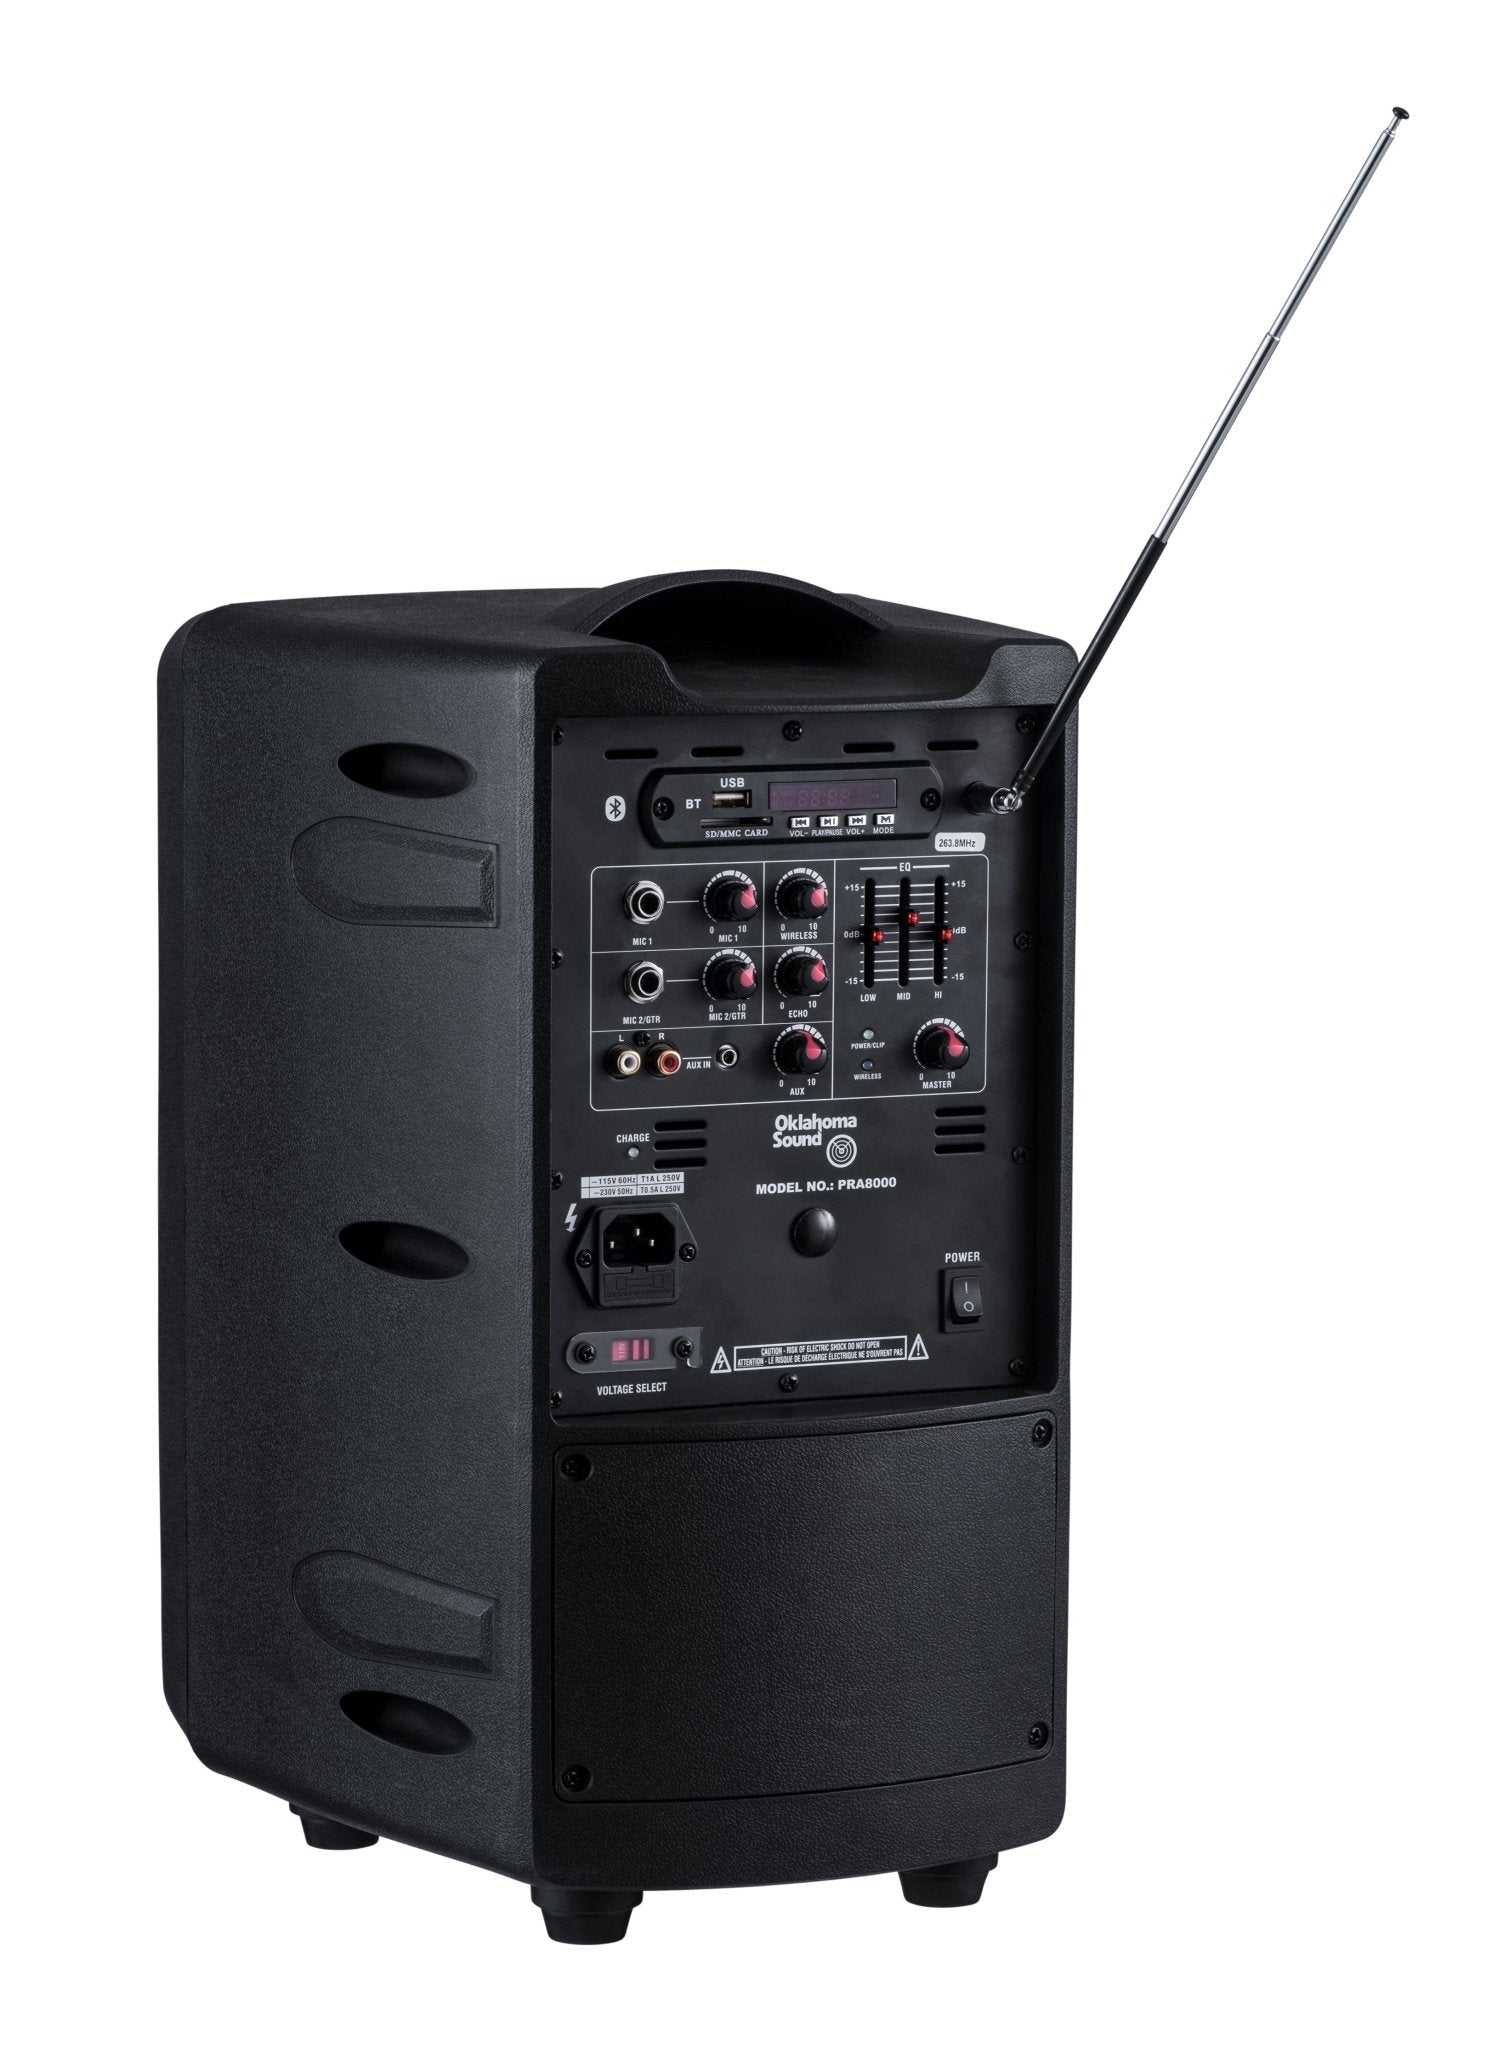 Oklahoma Sound - PRA-8000-PRA8-5 - 40 Watt Wireless PA System w/ Wireless Handheld Mic (Oklahoma Sound OKL-PRA-8000-PRA8-5) - SchoolOutlet